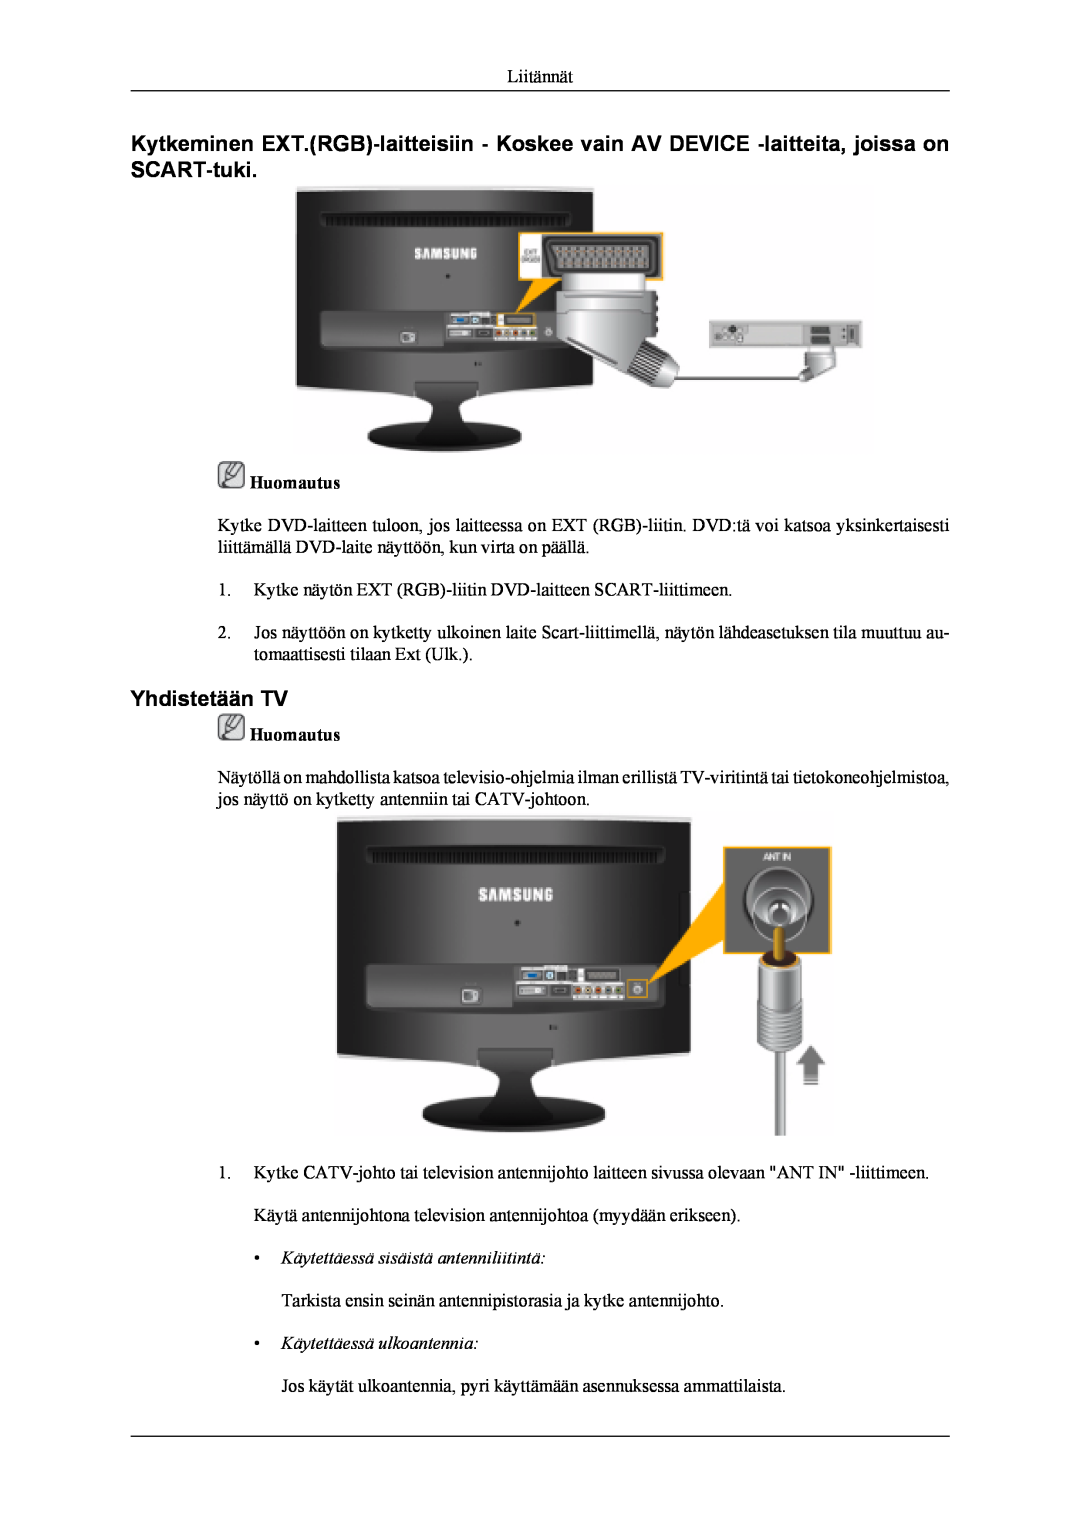 Samsung LS22TDVSUV/XE, LS20TDVSUV/EN manual Yhdistetään TV, Käytettäessä sisäistä antenniliitintä, Käytettäessä ulkoantennia 